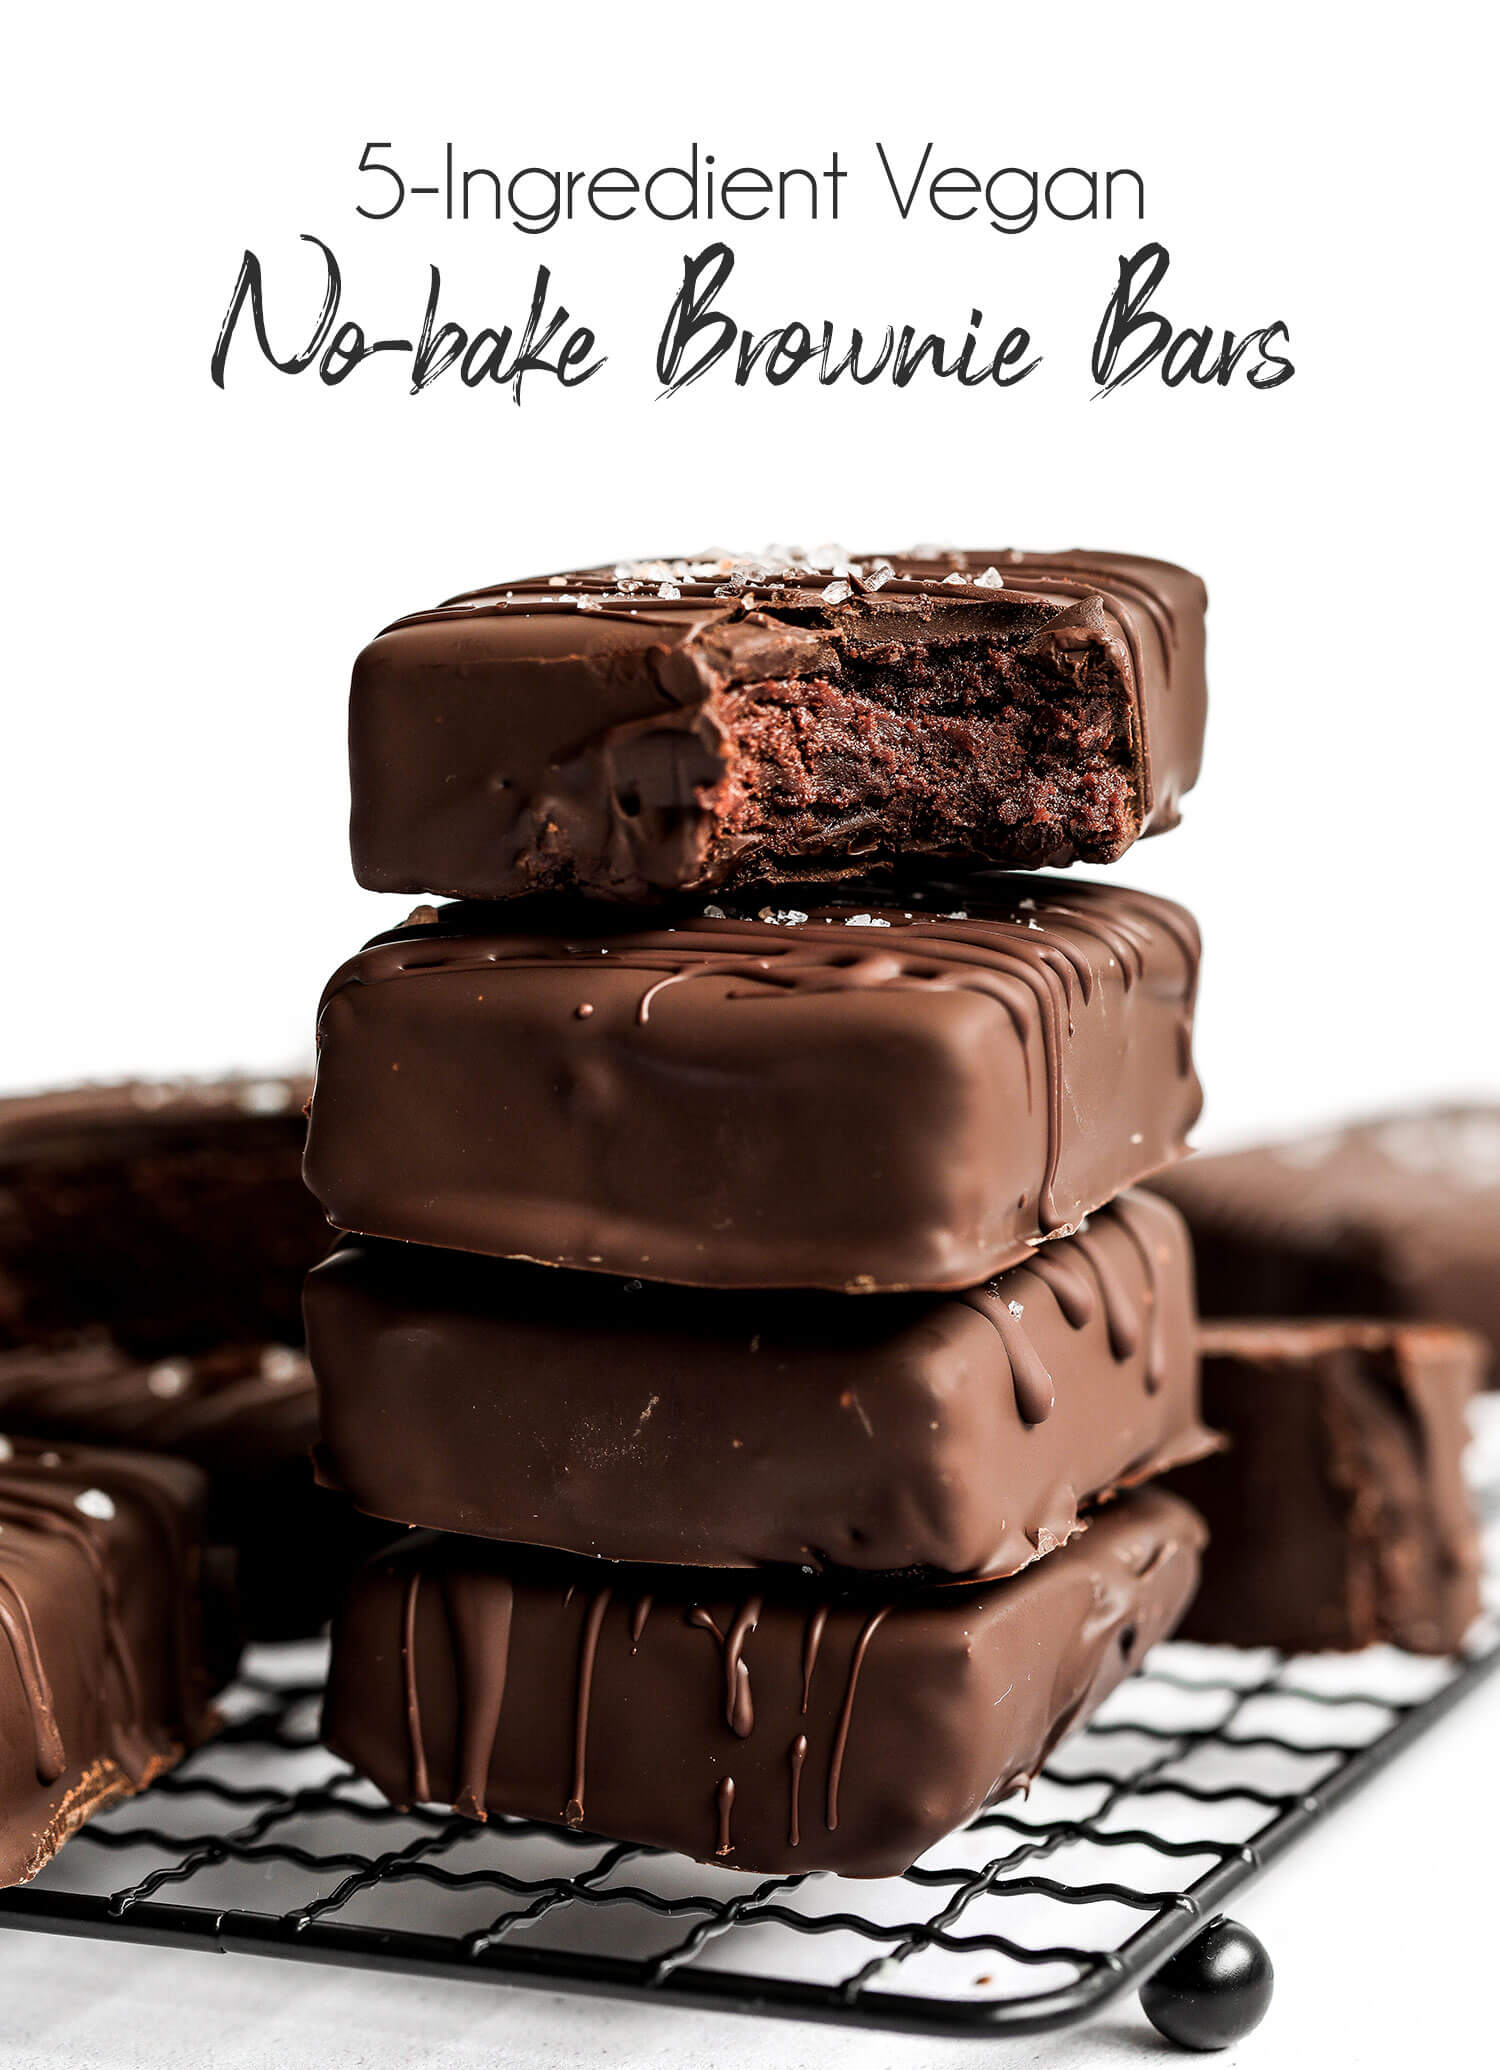 5-Ingredient Flourless Brownies - The BakerMama